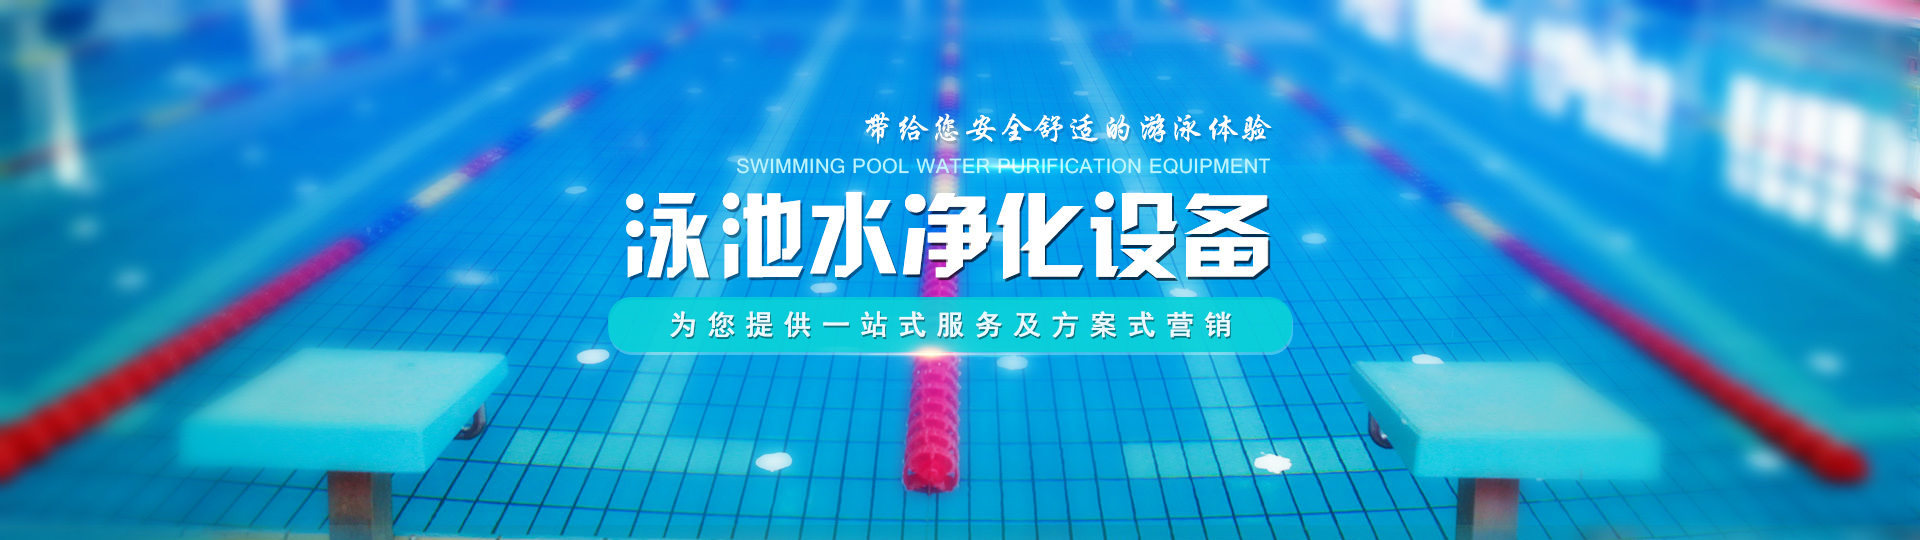 广州市华晞桑拿泳池设备有限公司